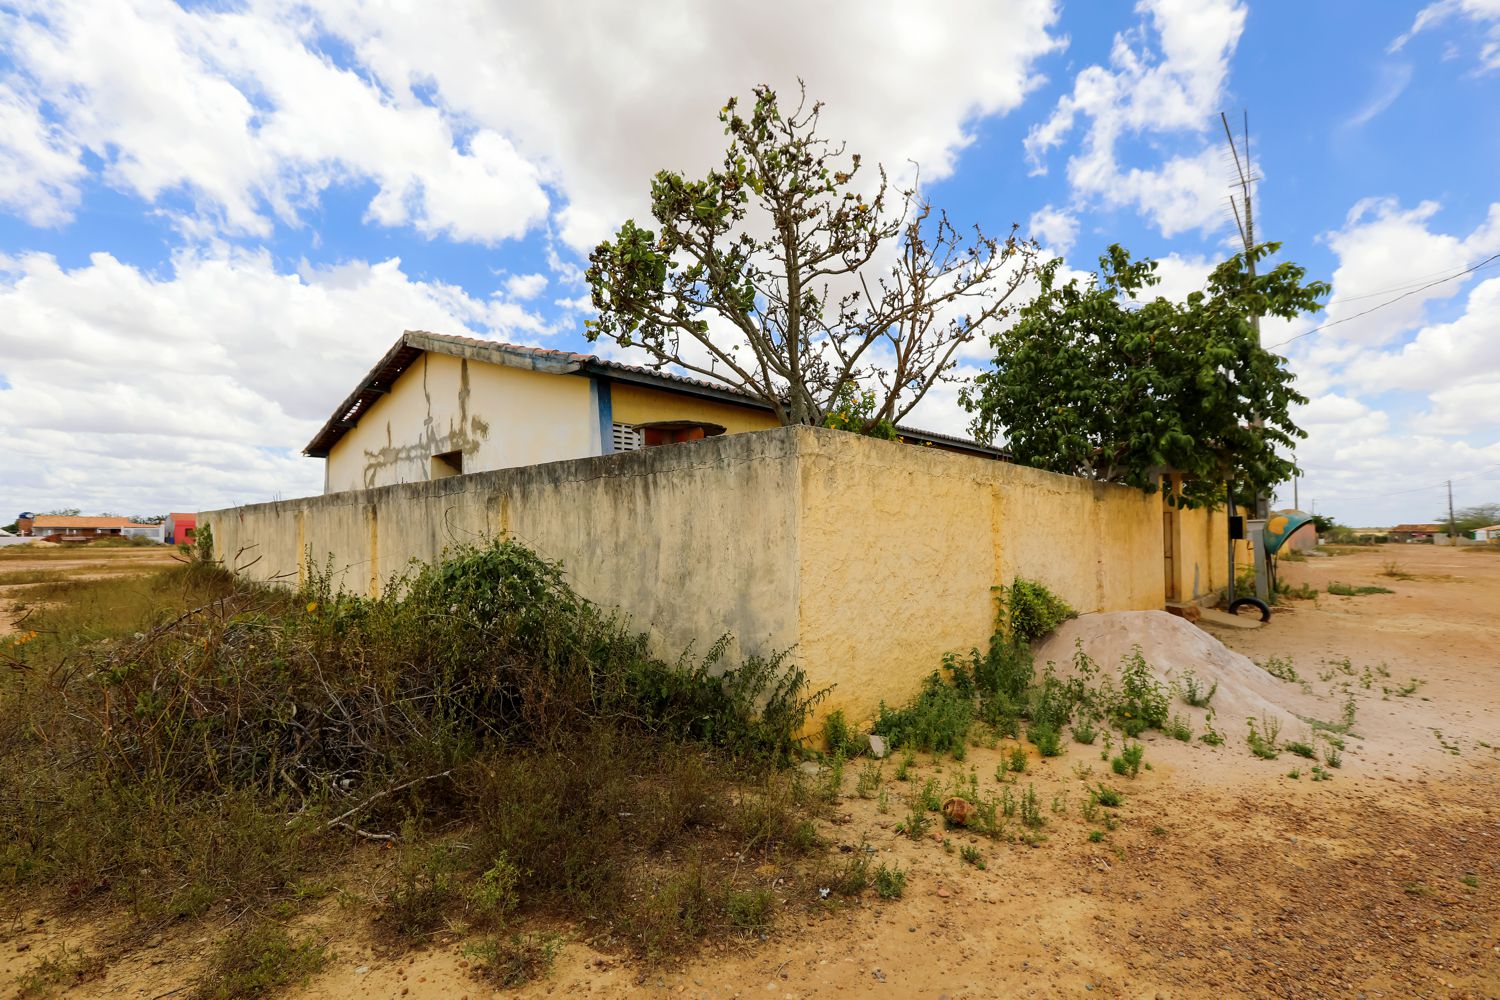 Inaugurada em 2003, a escola do assentamento Fortaleza foi fechada em 2017.